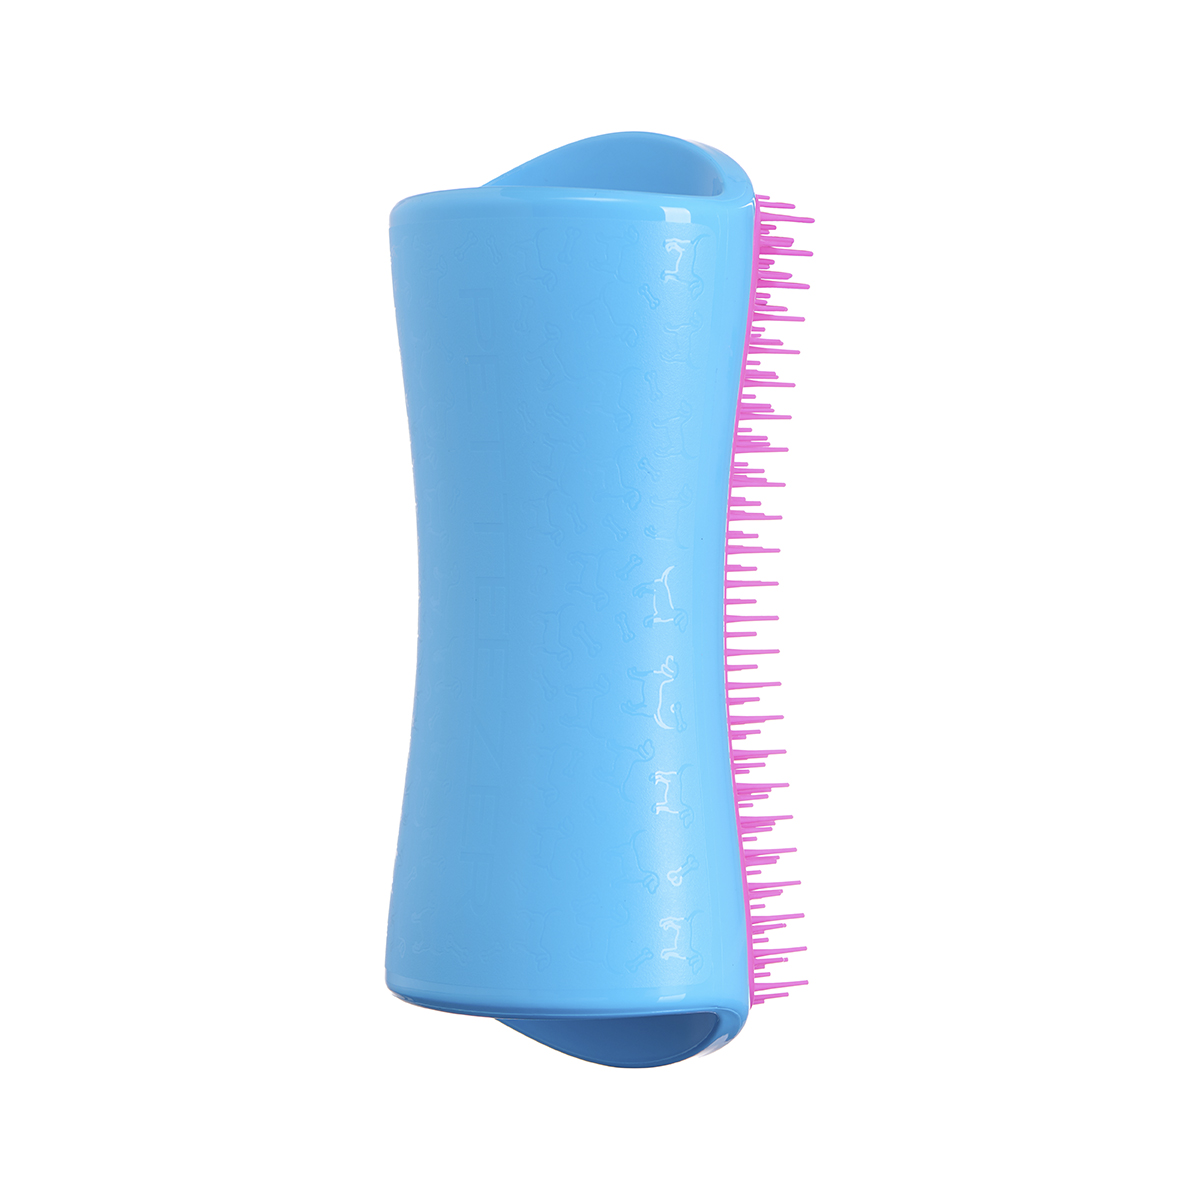 Расческа для вычесывания шерсти Pet Teezer De-shedding & Dog Grooming Brush Blue & Pink